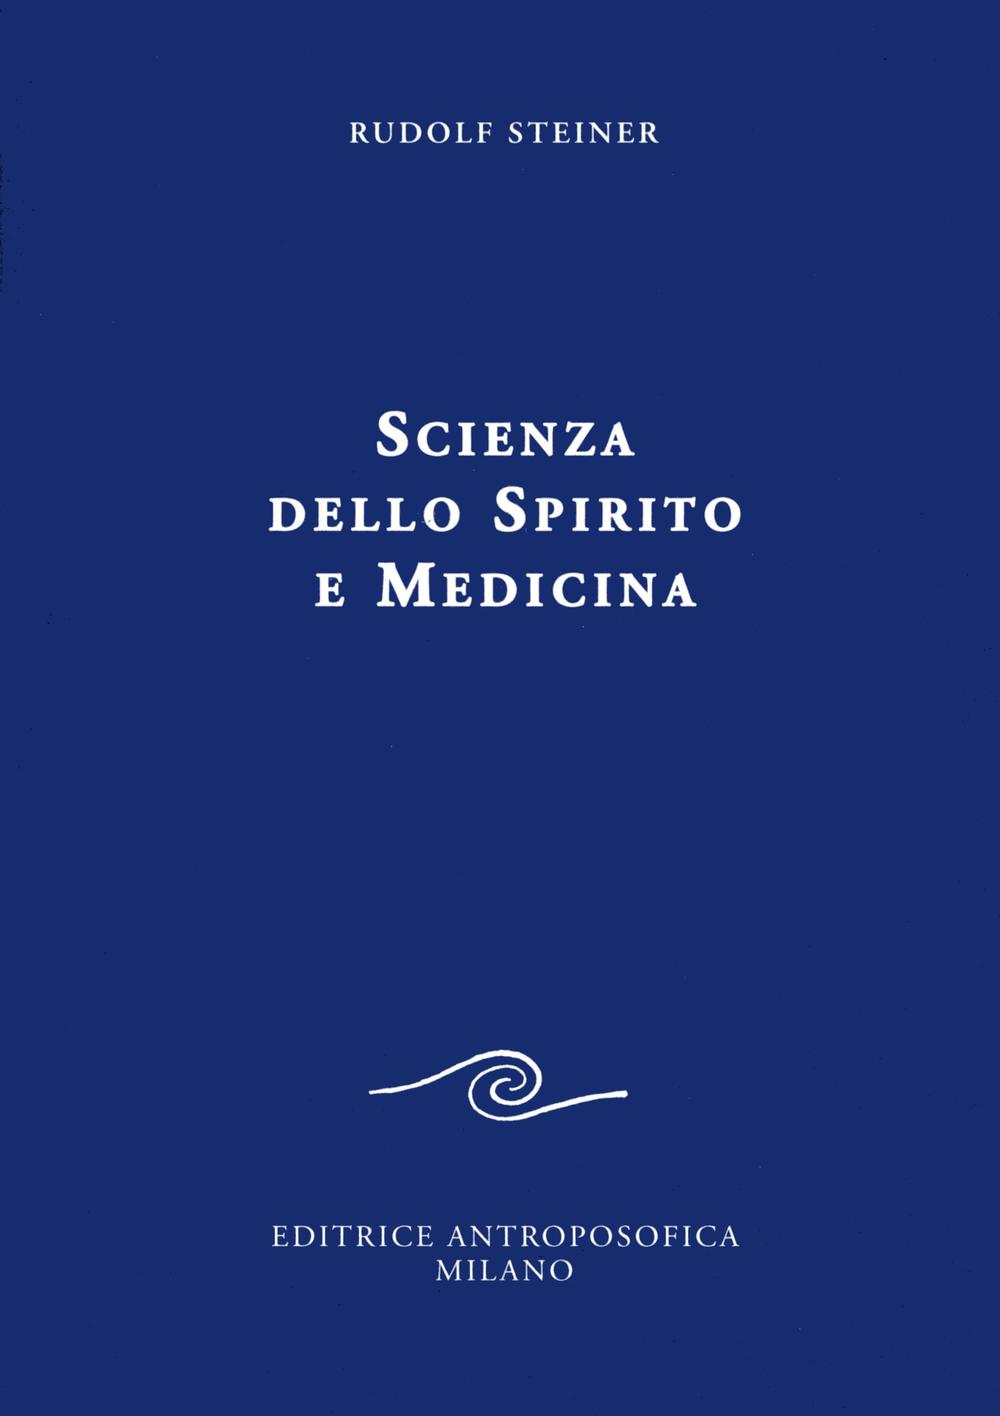 Image of Scienza dello spirito e medicina